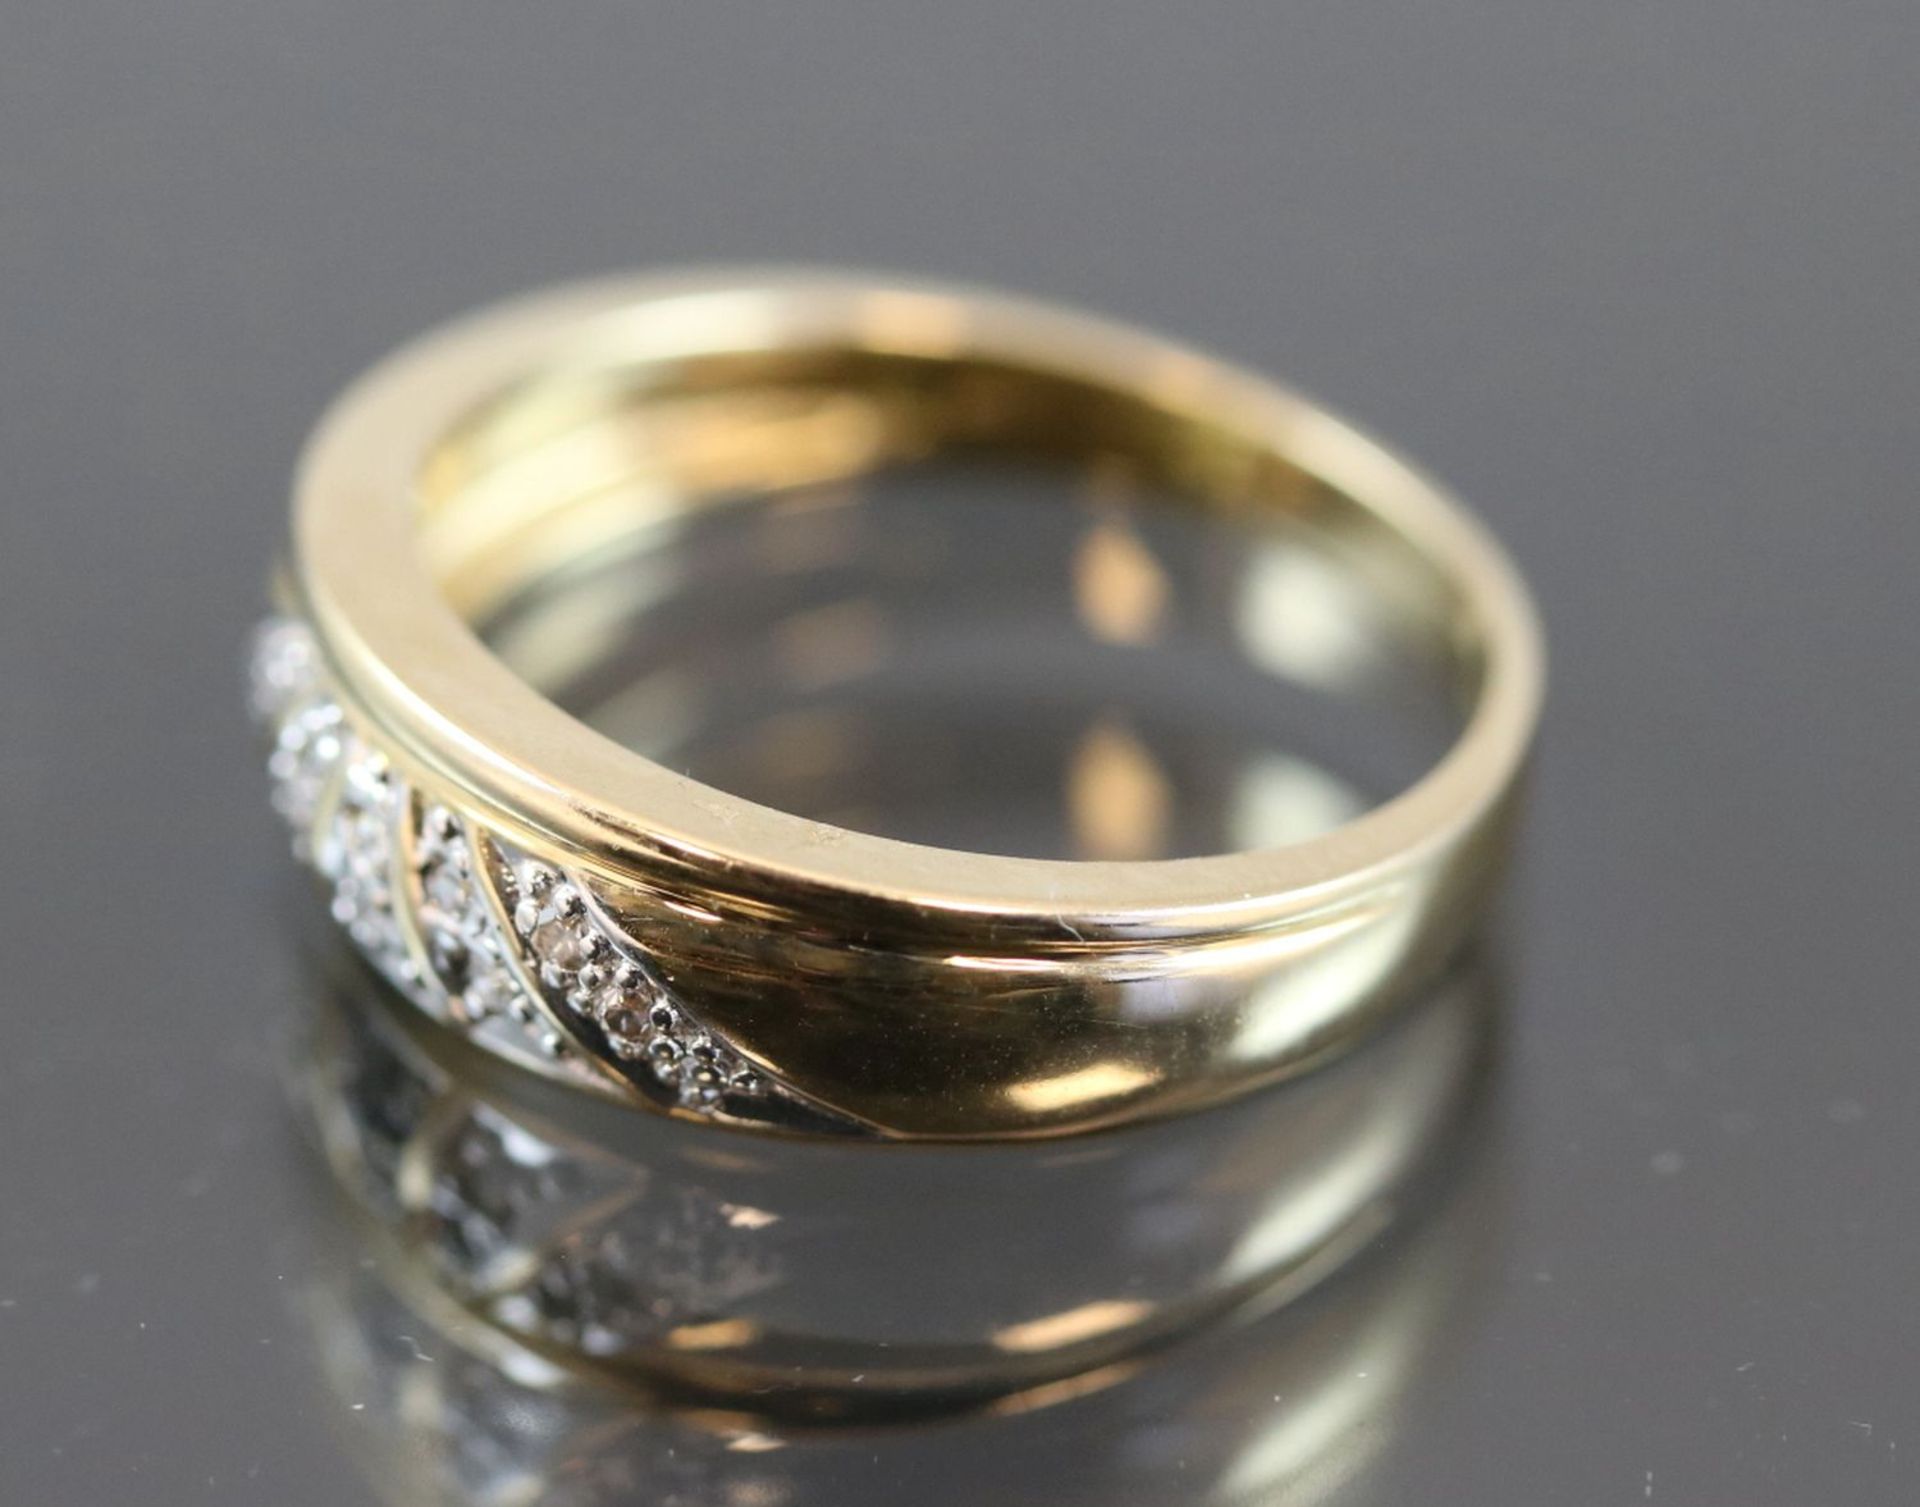 Diamant-Ring, 585 Gelbgold3,5 Gramm 10 Diamanten, 0,10 ct., w/si. Ringgröße: 54Schätzpreis: 400,- - Bild 2 aus 7